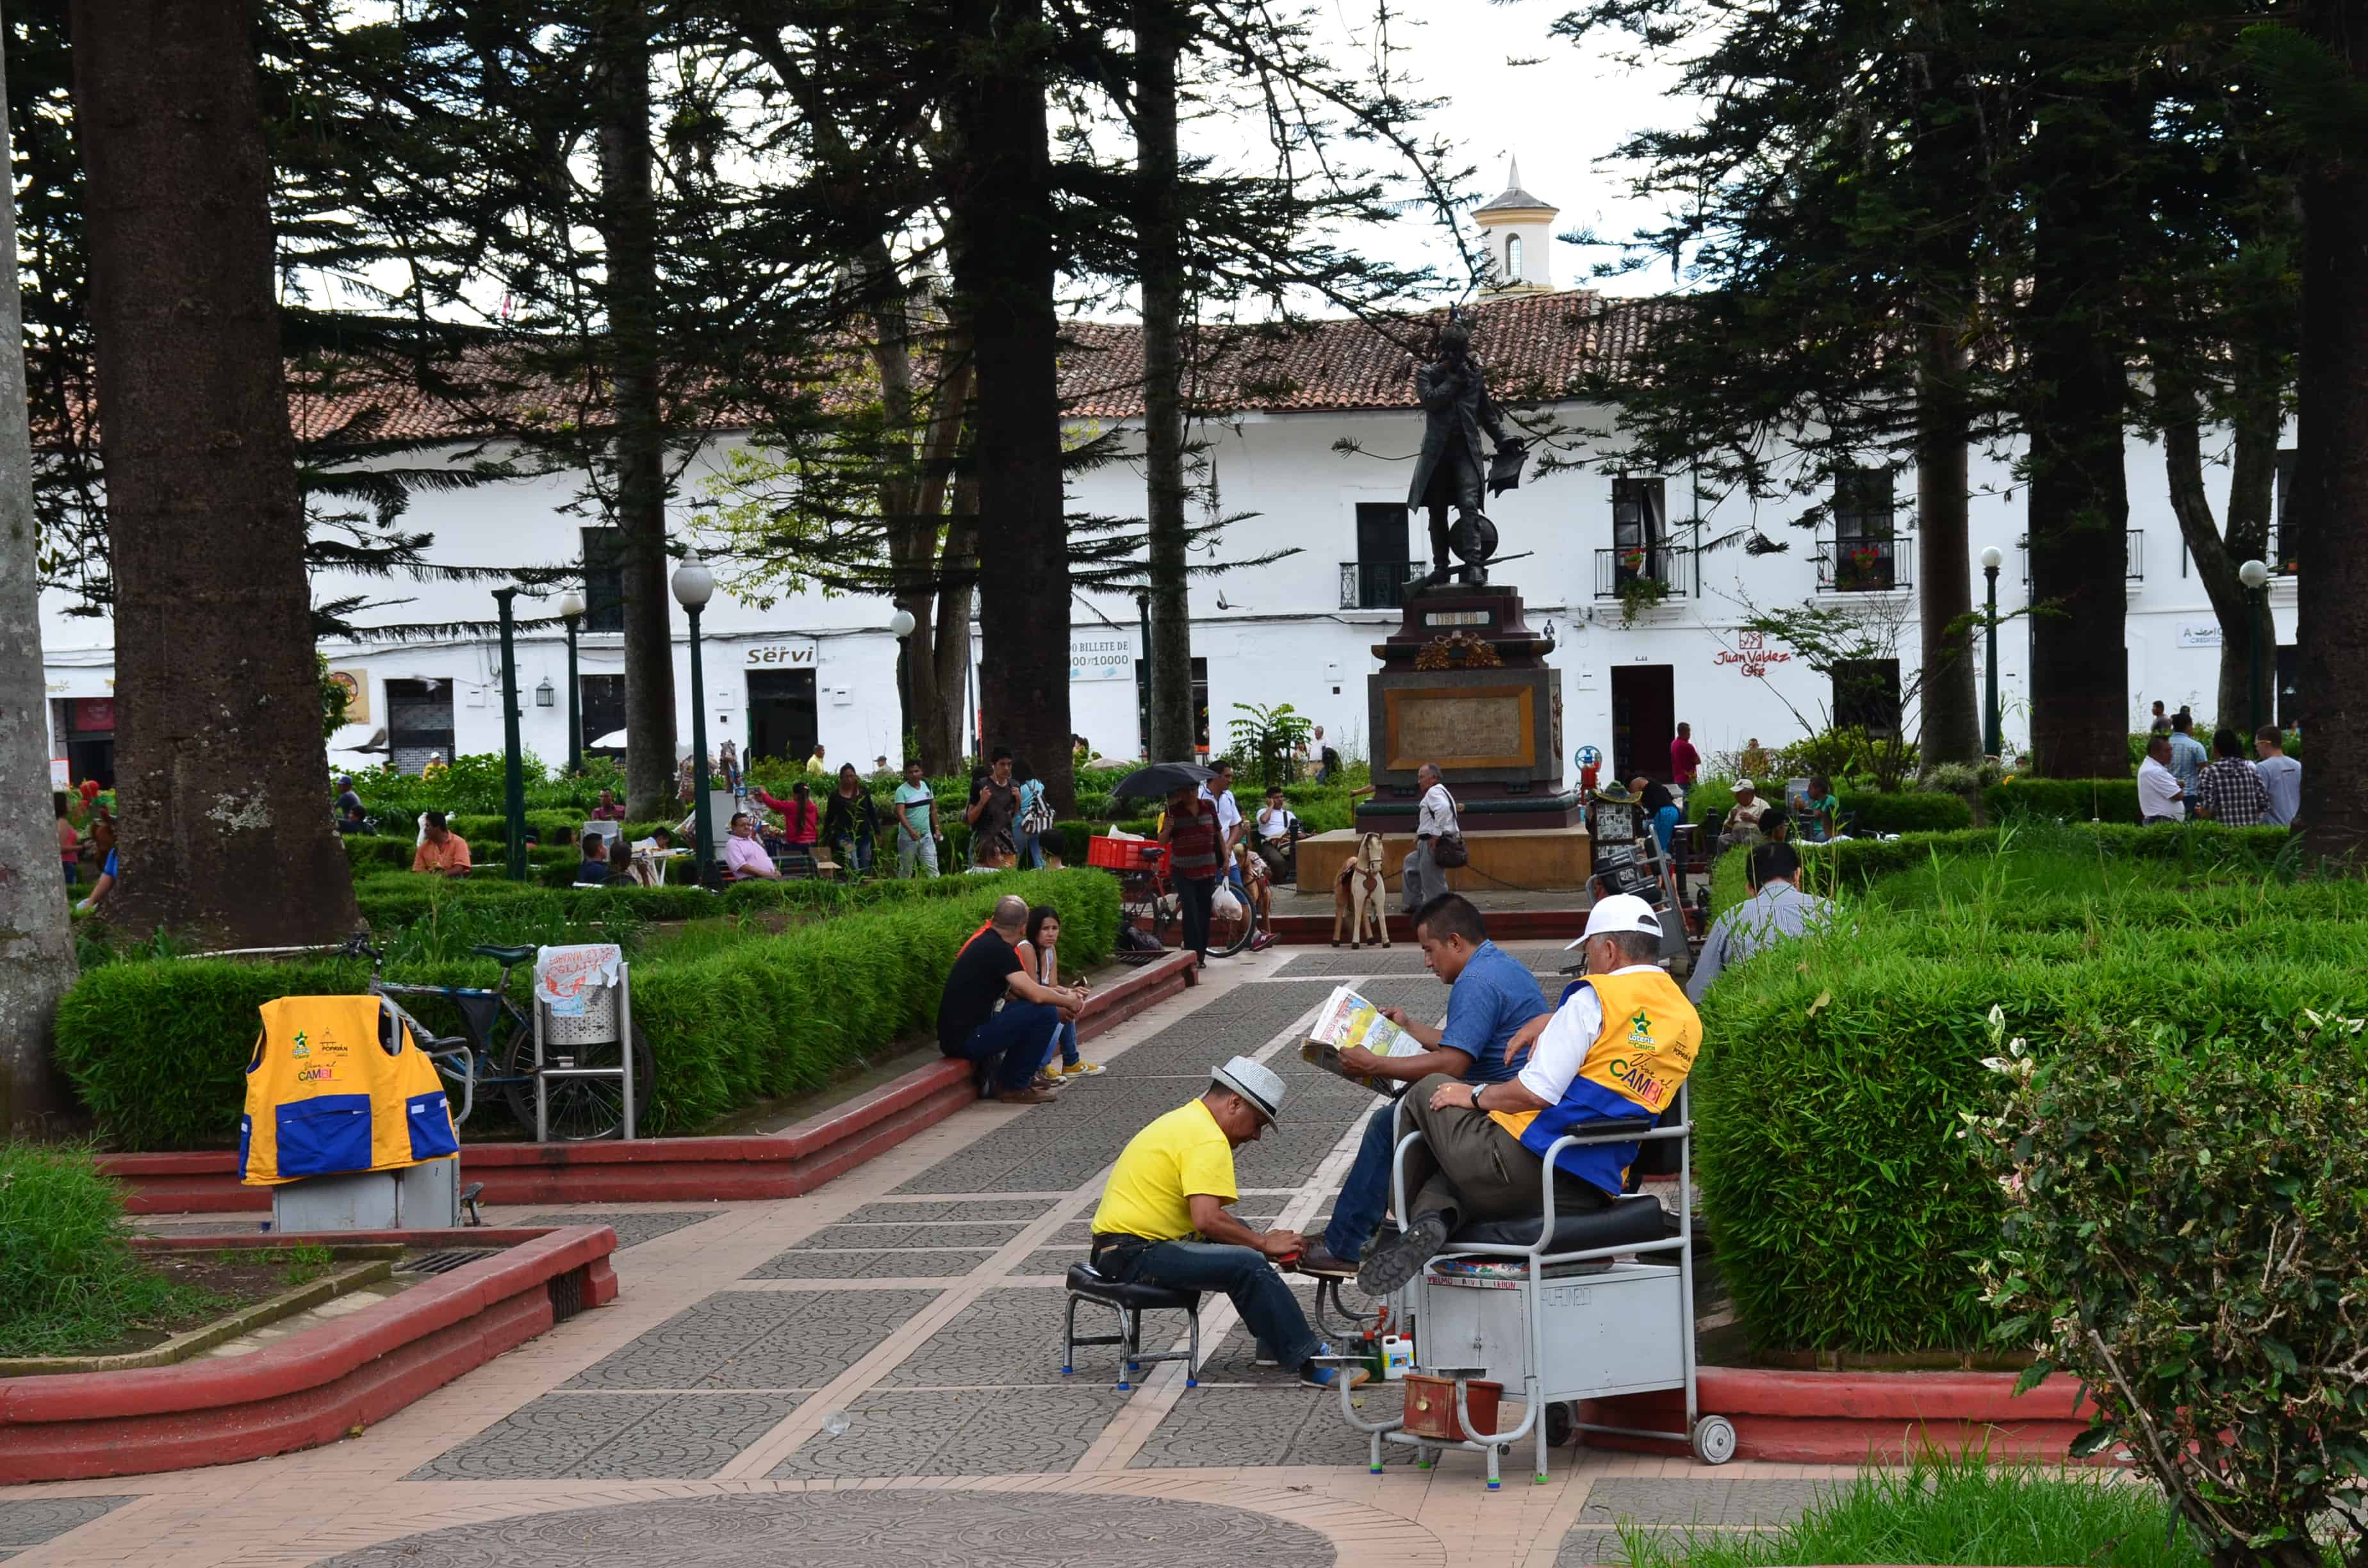 Parque Caldas in Popayán, Cauca, Colombia